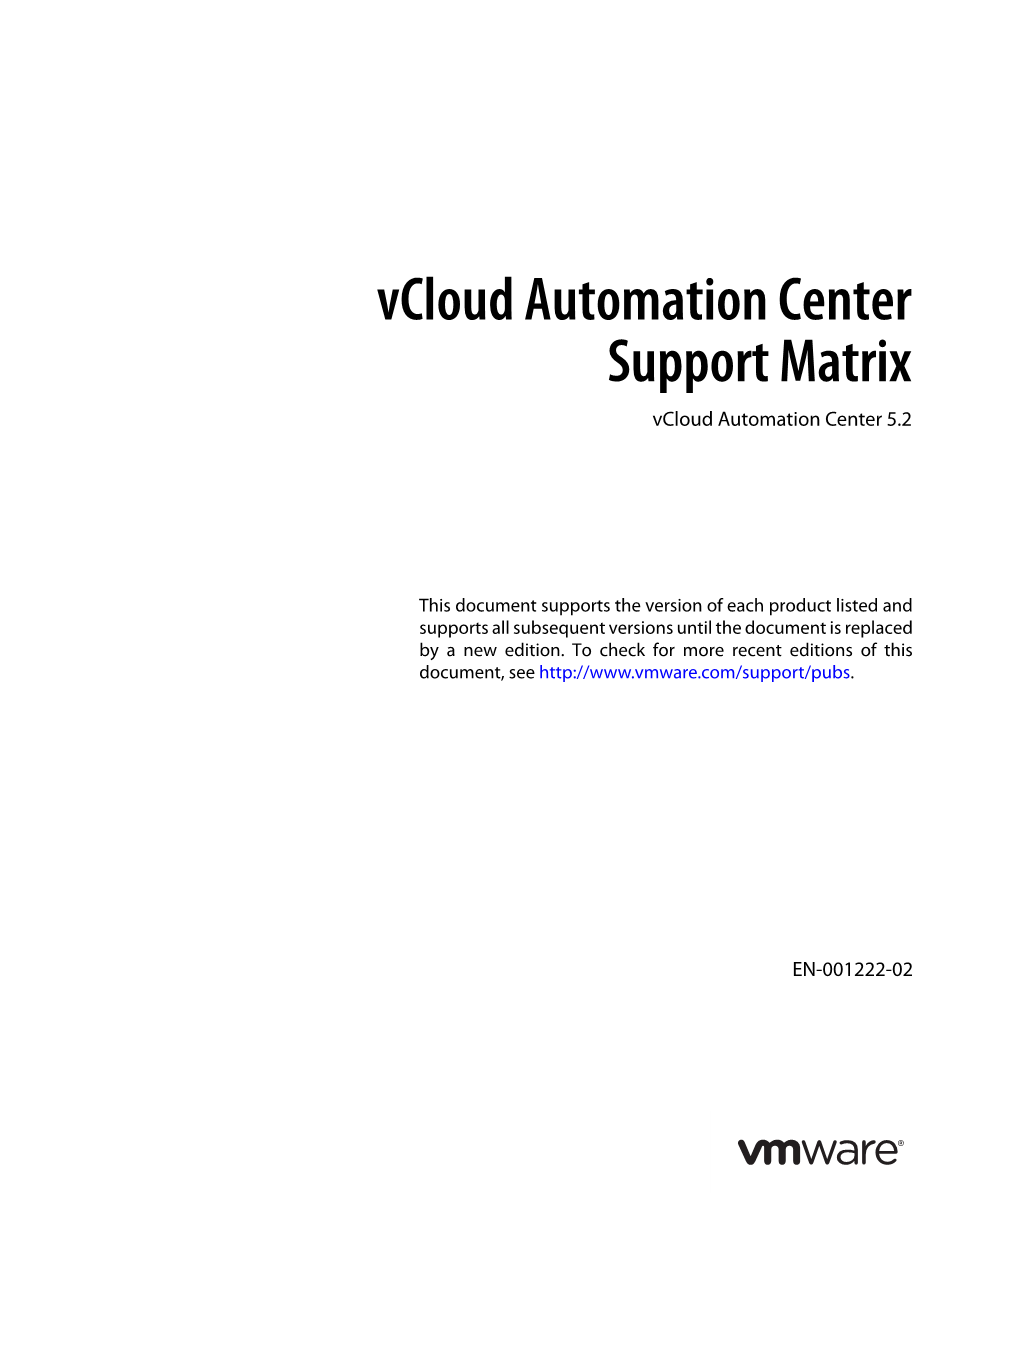 Vcloud Automation Center 5.2 Support Matrix